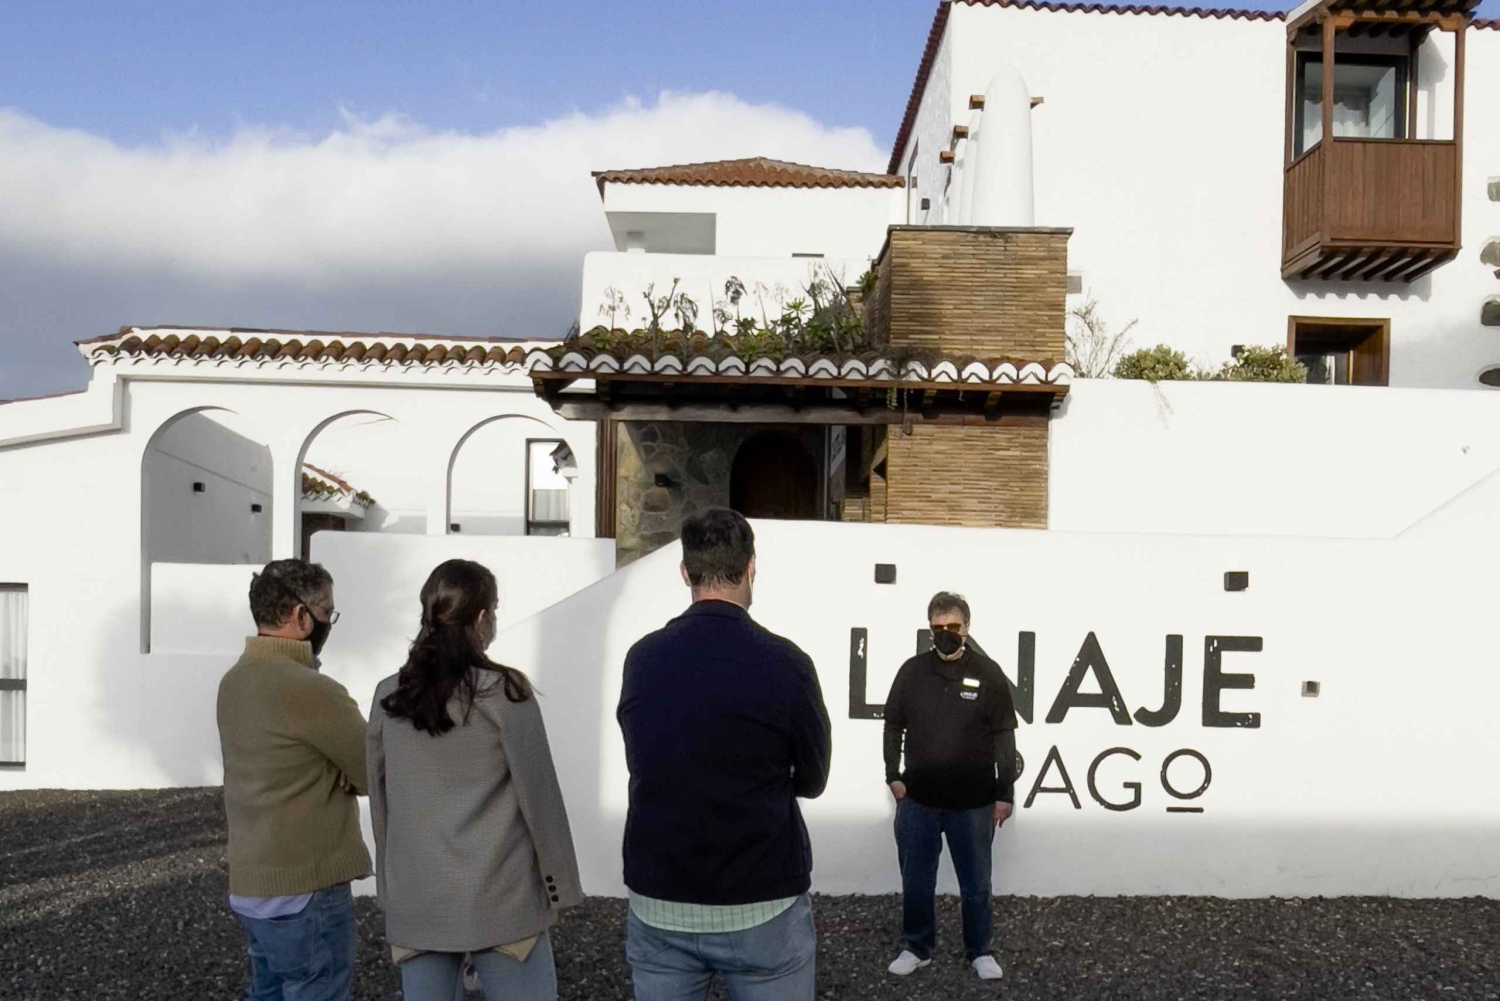 Santa Cruz de Tenerife: Guided Winery Tour and Tasting